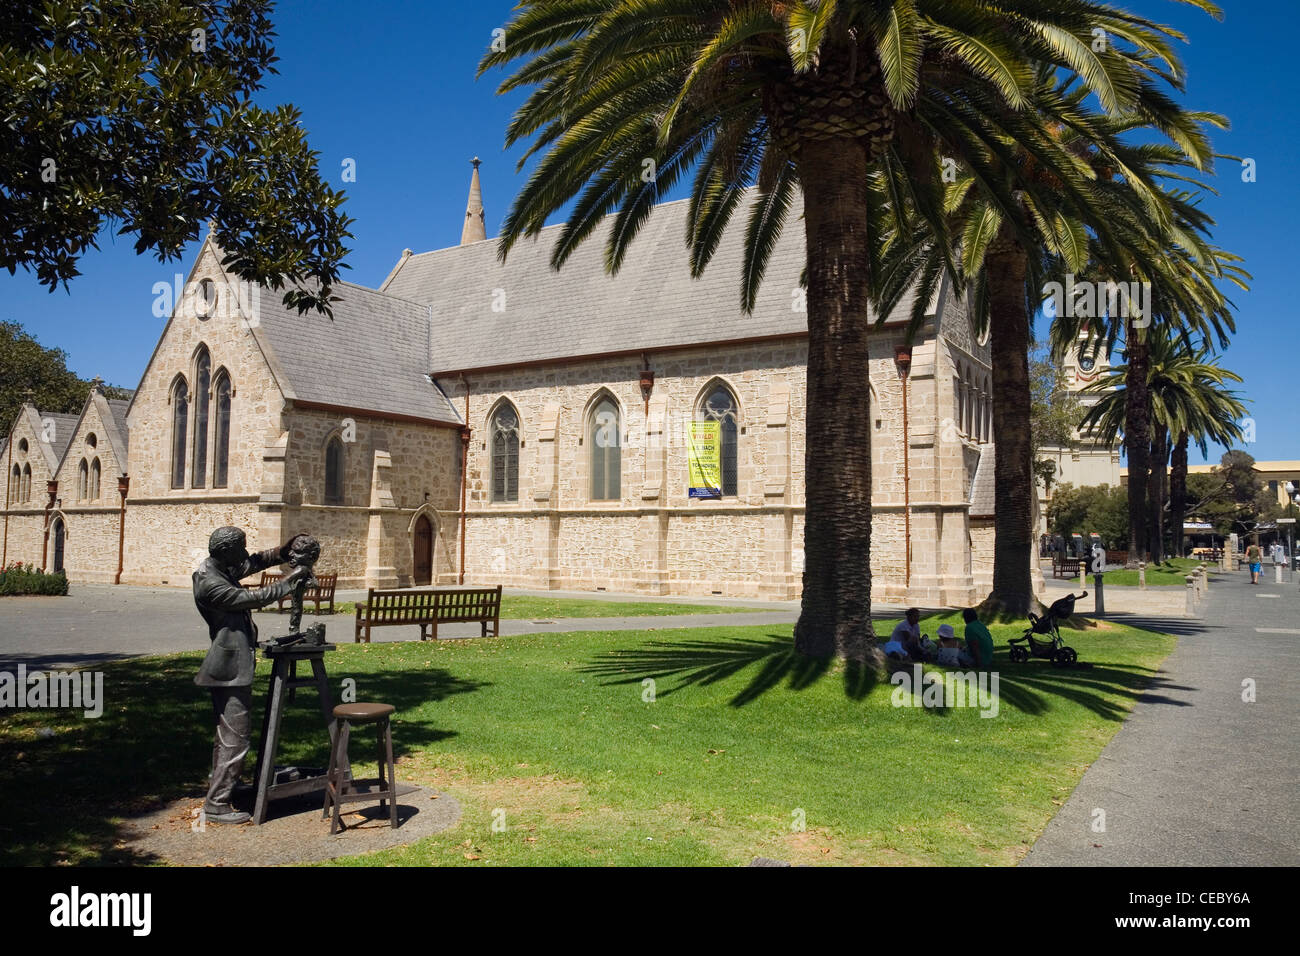 St Johns anglikanische Kirche - eines der vielen Goldrausch-Ära Erbe Gebäude in Fremantle, Western Australia, Australien Stockfoto